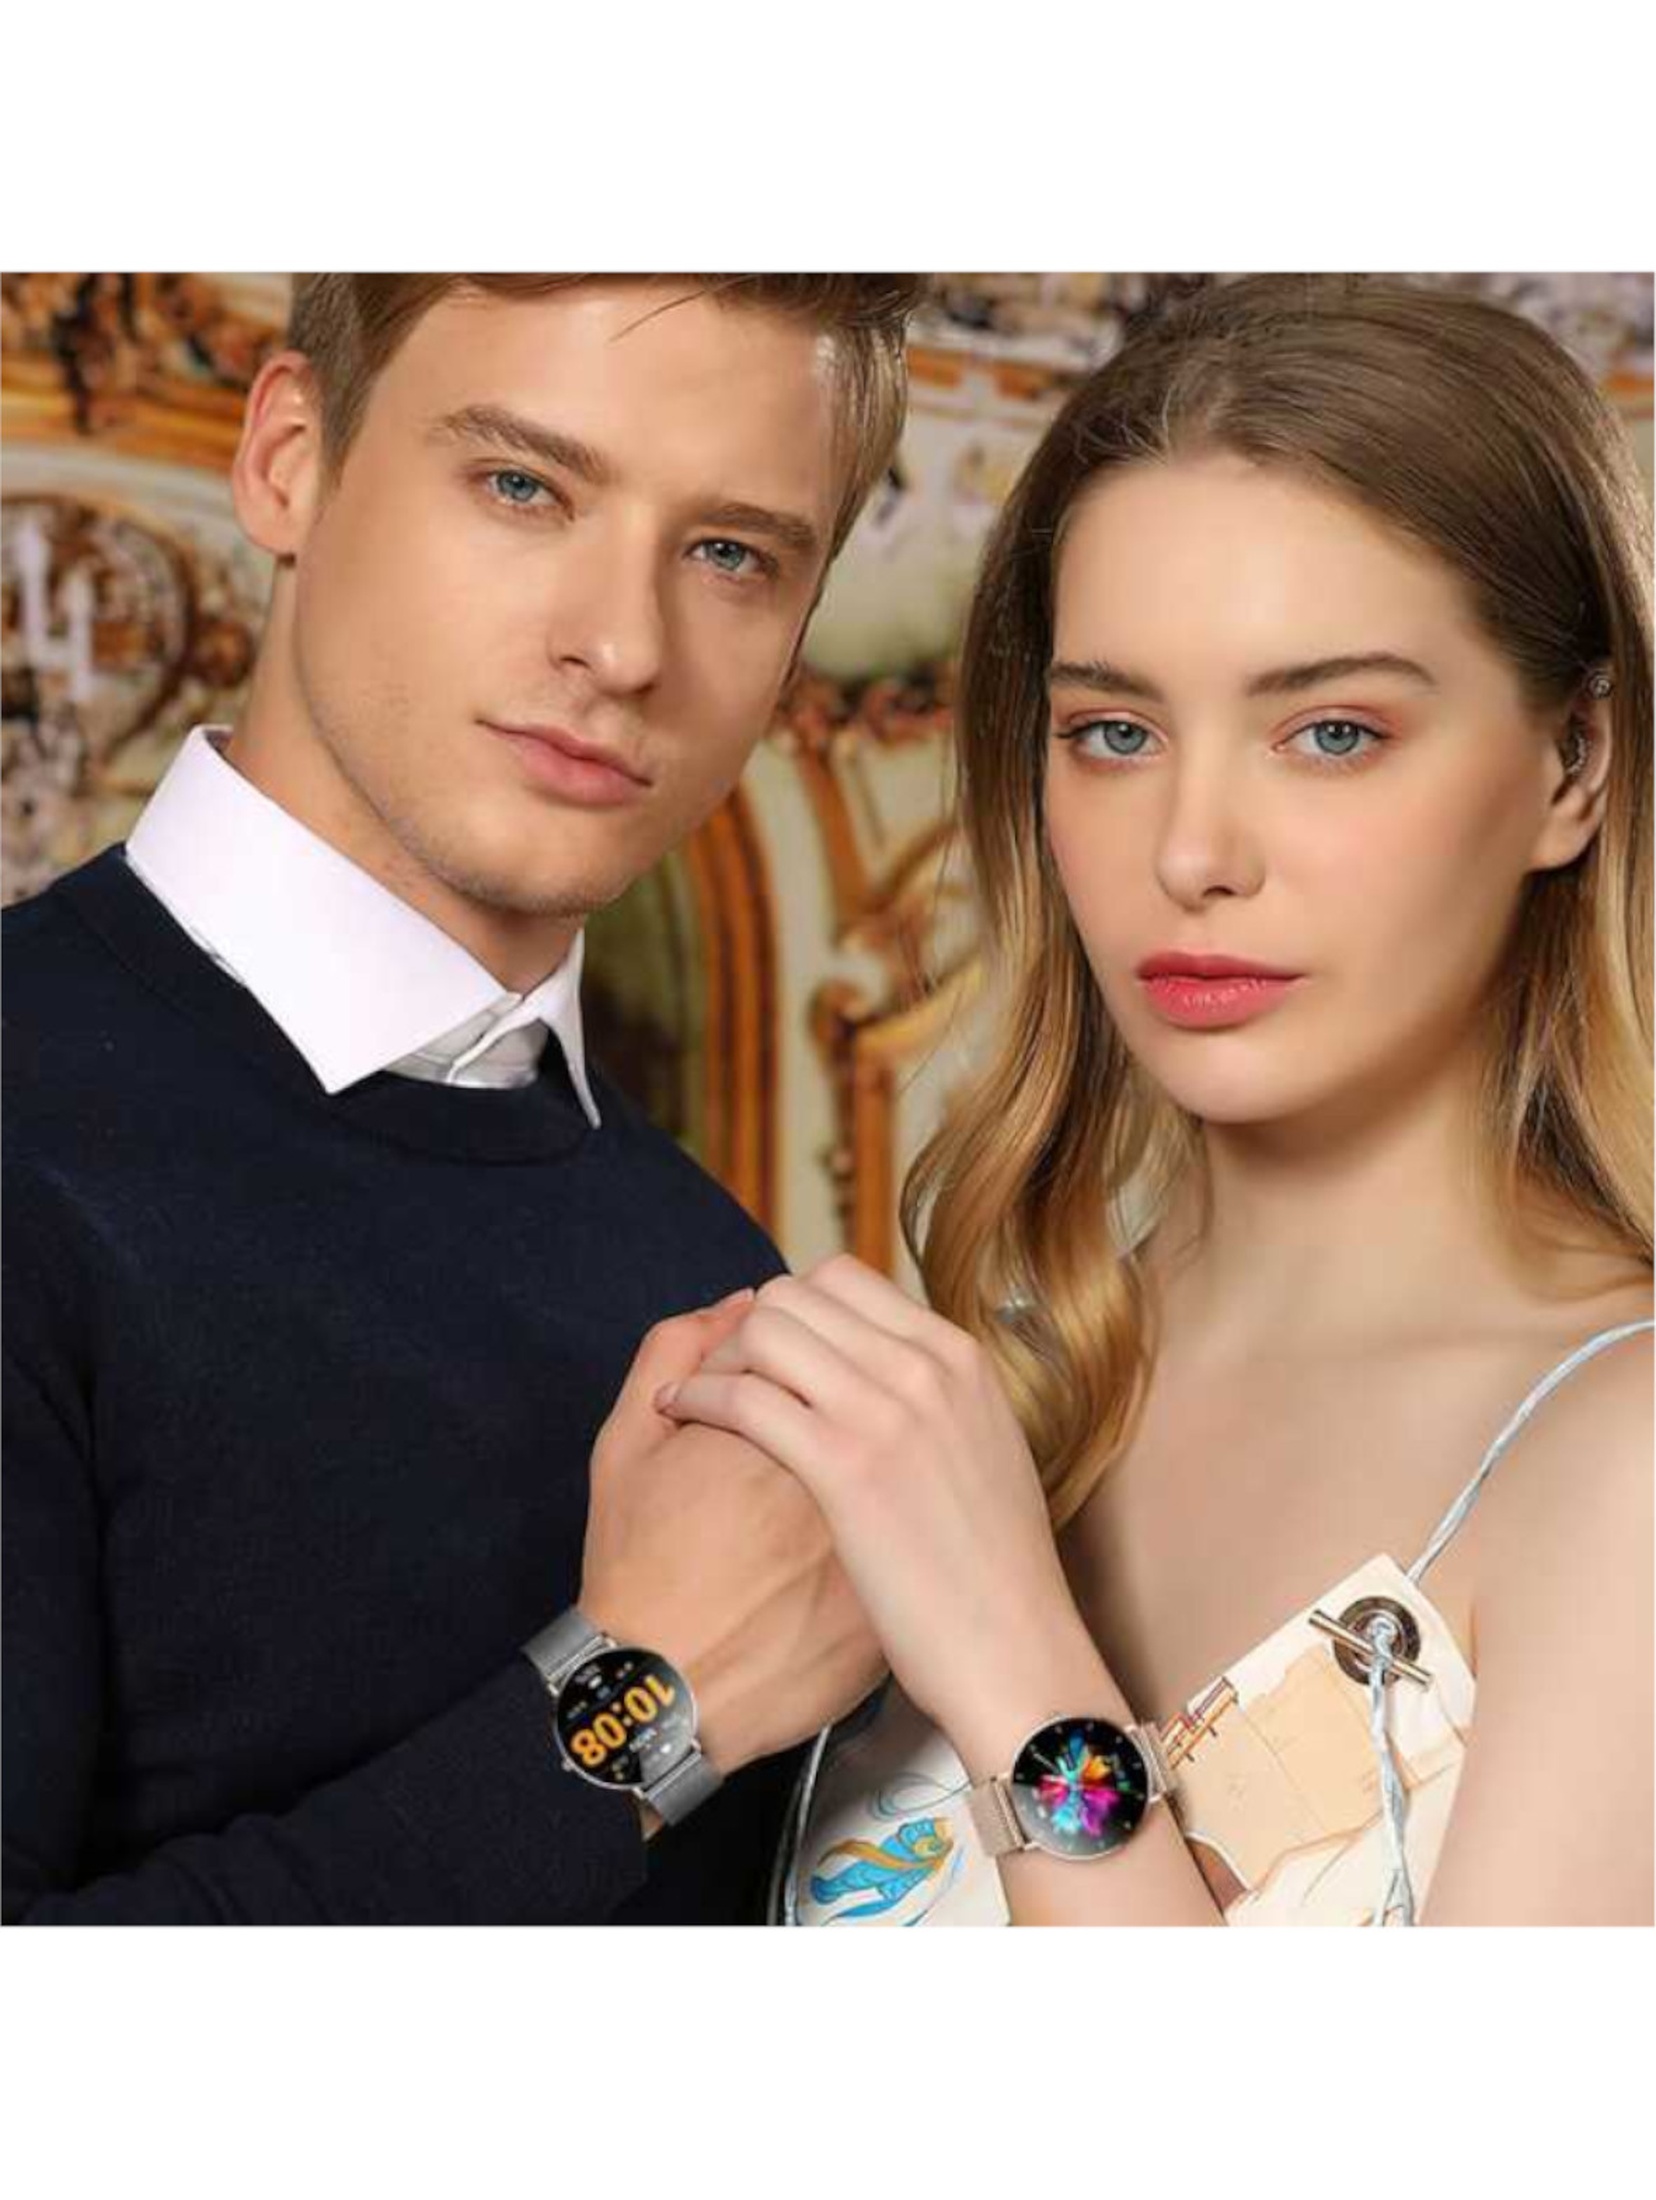 Smartwatch zegarek damski Manta Alexa - złoty + różowy pasek